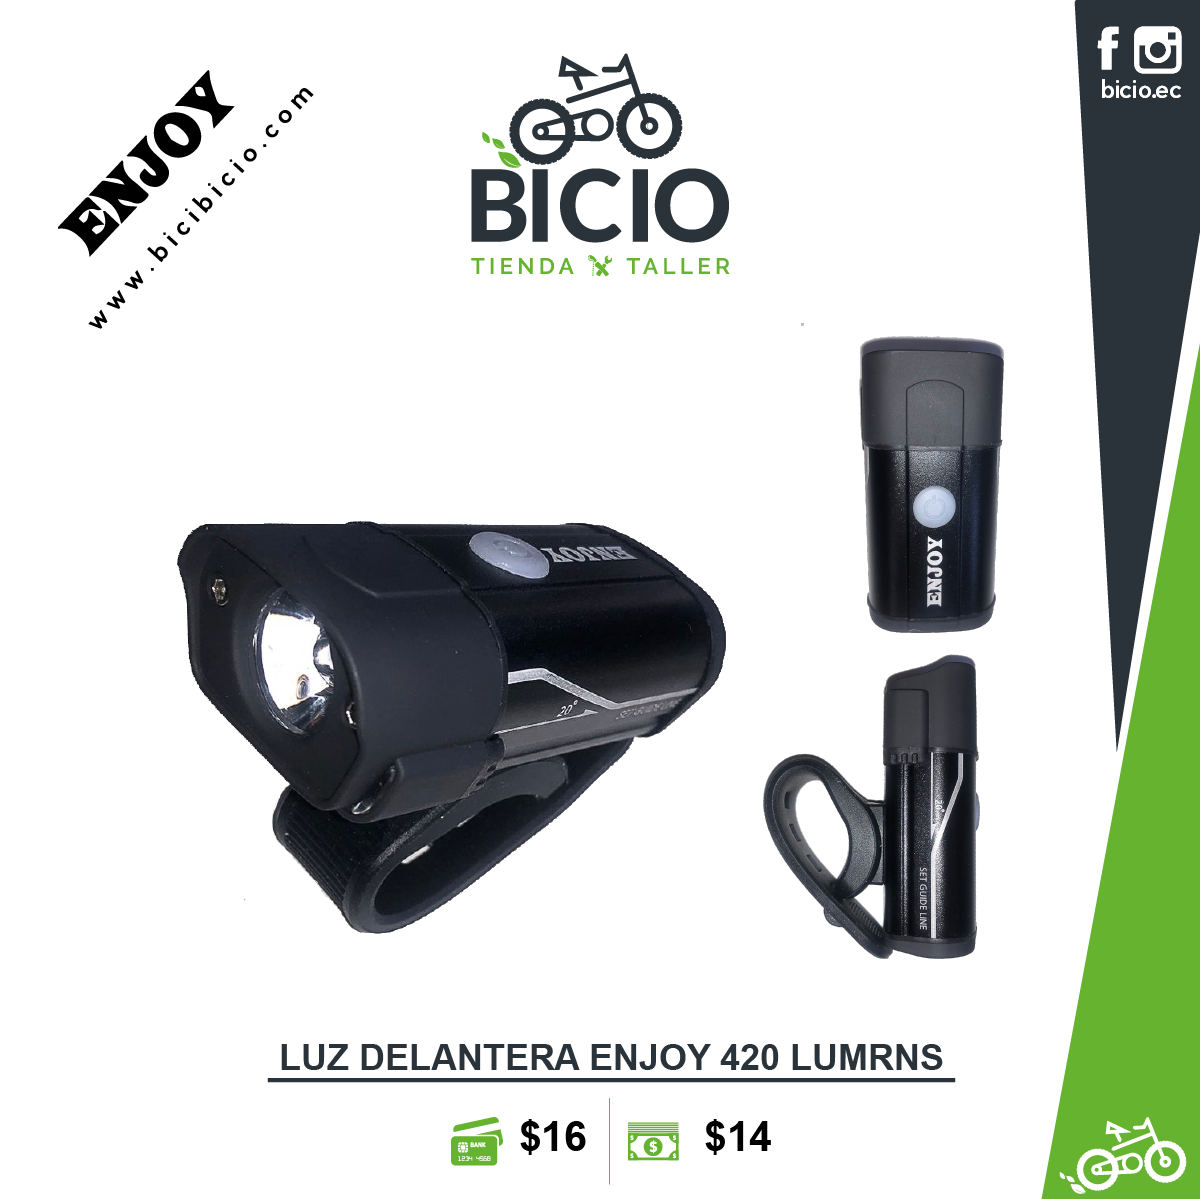 Luz delantera Enjoy 420LM - Bicio tienda - taller de bicicletas